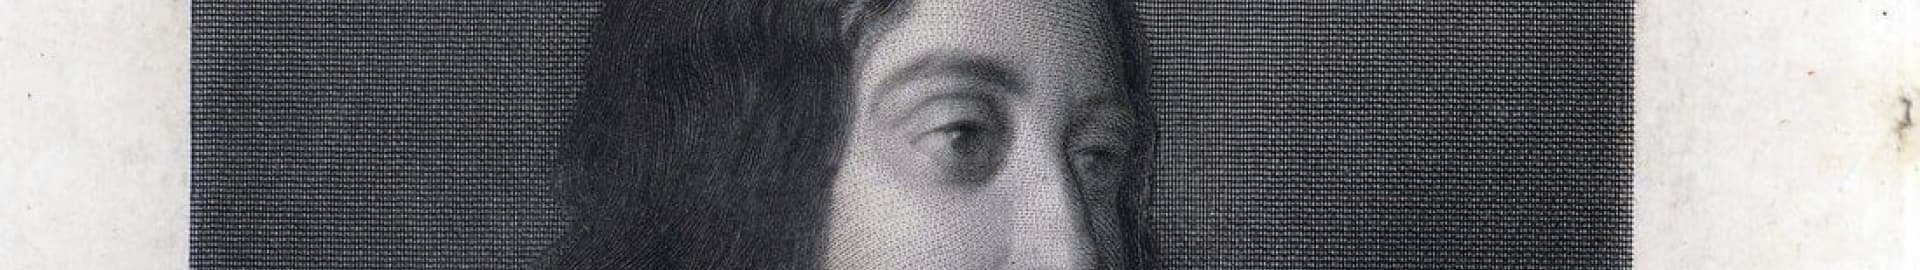 Visite expresse, découvrez une œuvre en 30 minutes top chrono ! - Portrait gravé de George Sand d’après Delacroix